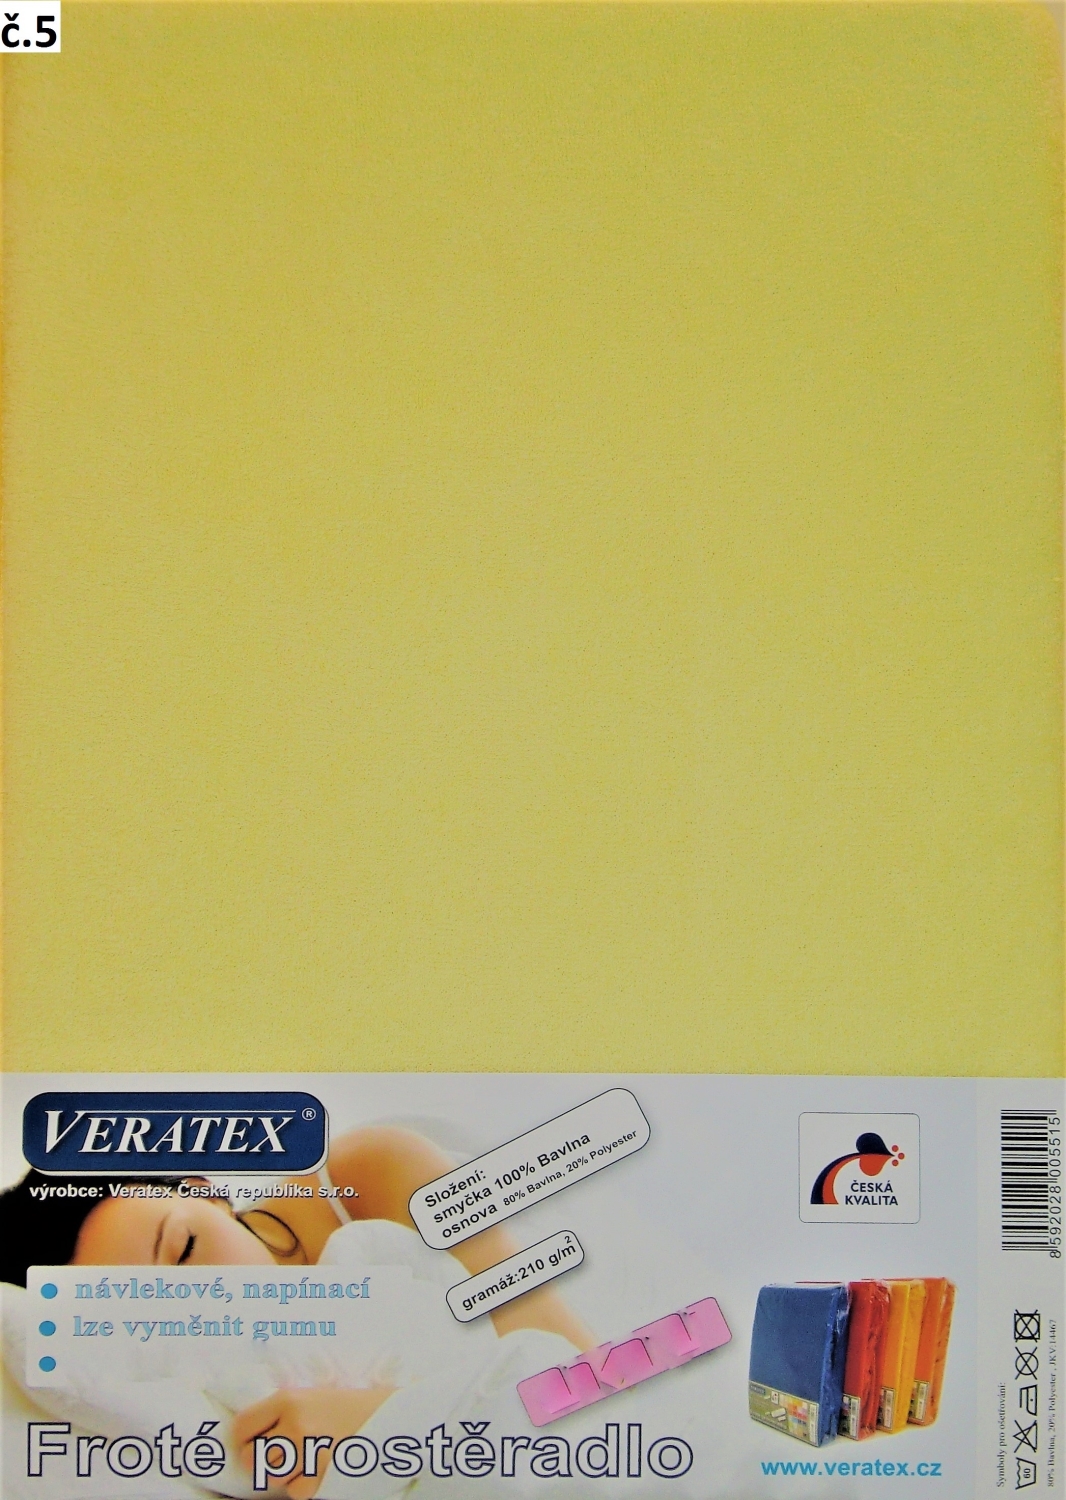 Veratex Froté prostěradlo jednolůžko 90x200x25cm (č. 5-sv.žluté)